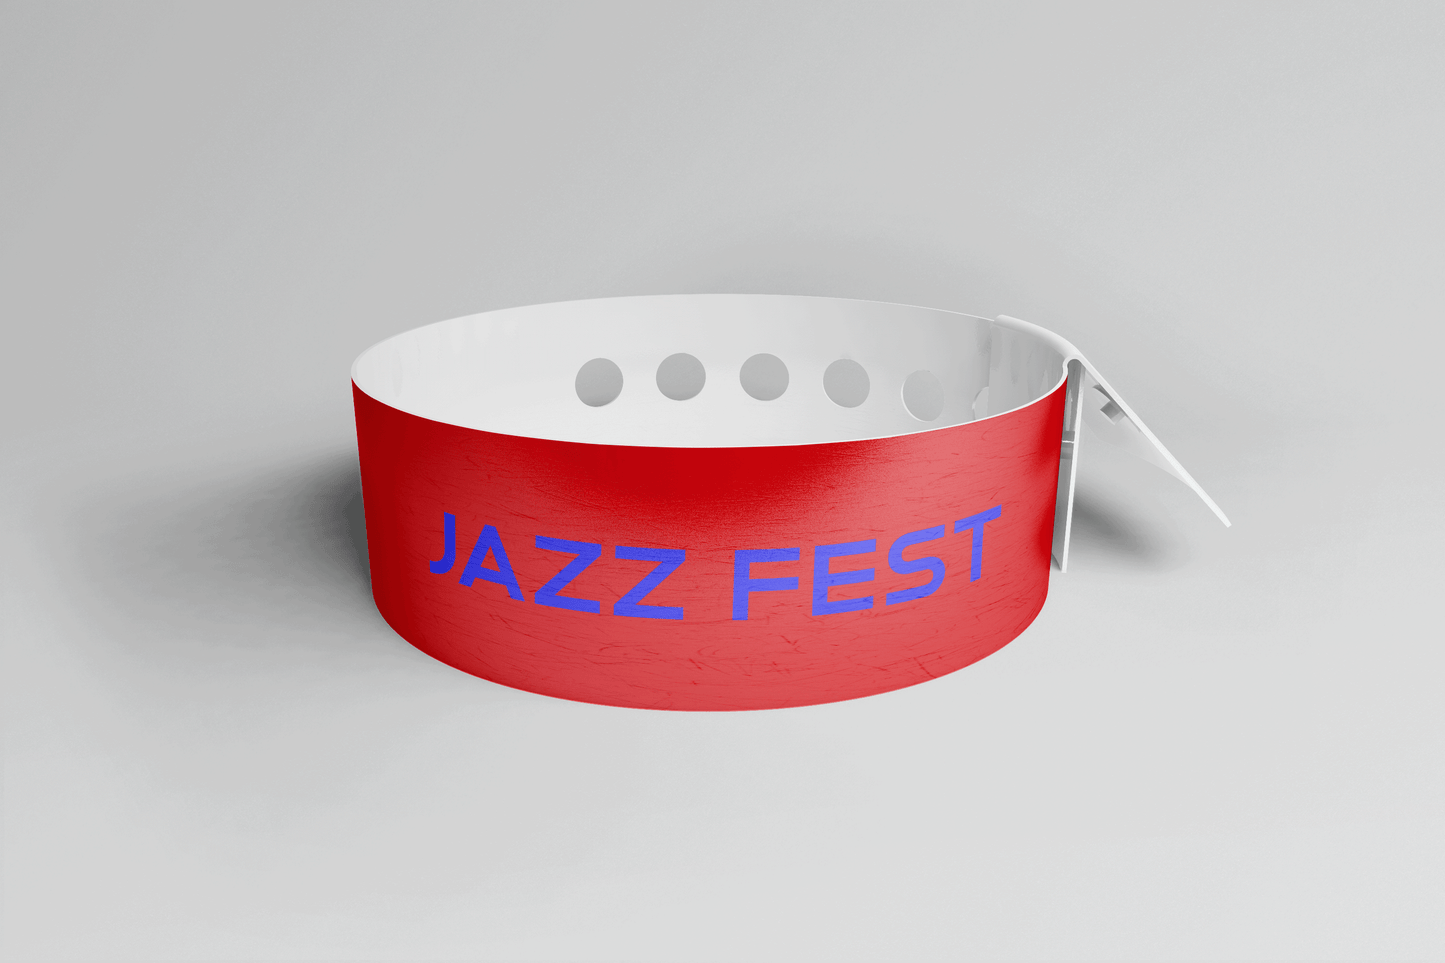 Et JM Band NO Plastarmbånd L-print Design selv laget av rød PVC med ordet "jazz fest" påtrykt. Produksjonstiden for dette plastarmbåndet er minimal.